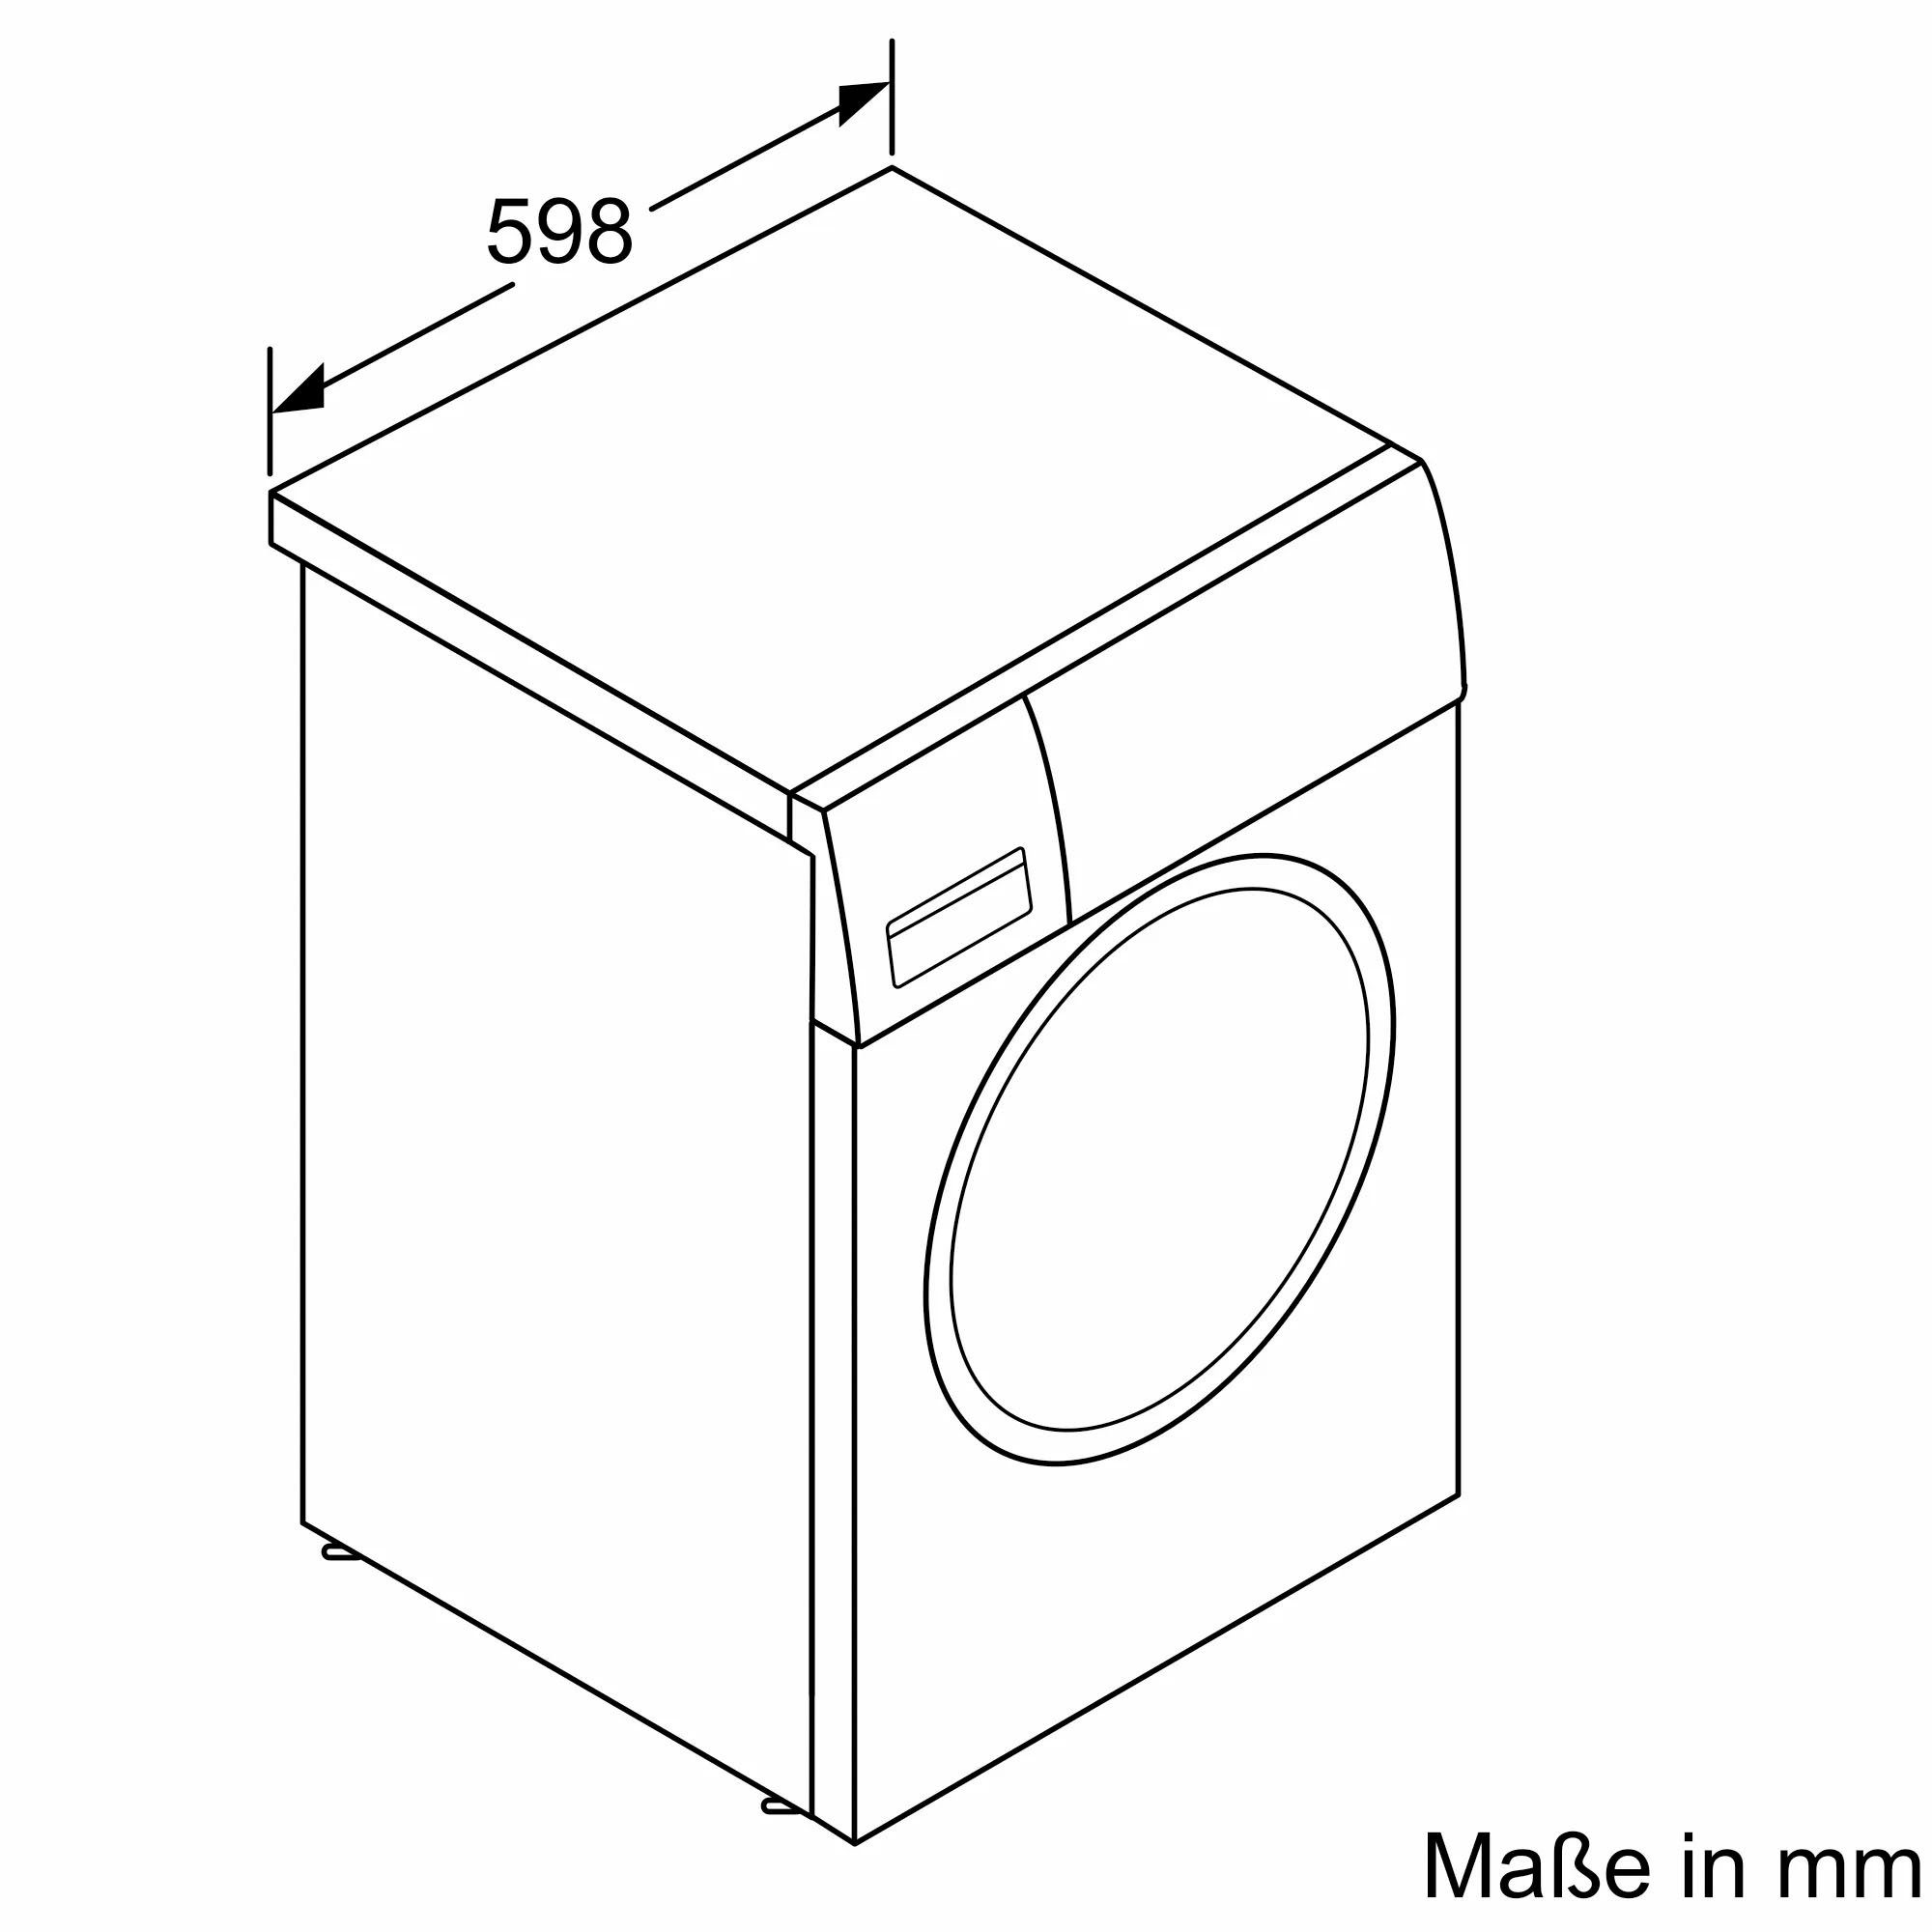 BOSCH Waschmaschine Serie 4 WAN282A3, U/min 1400 kg, 7